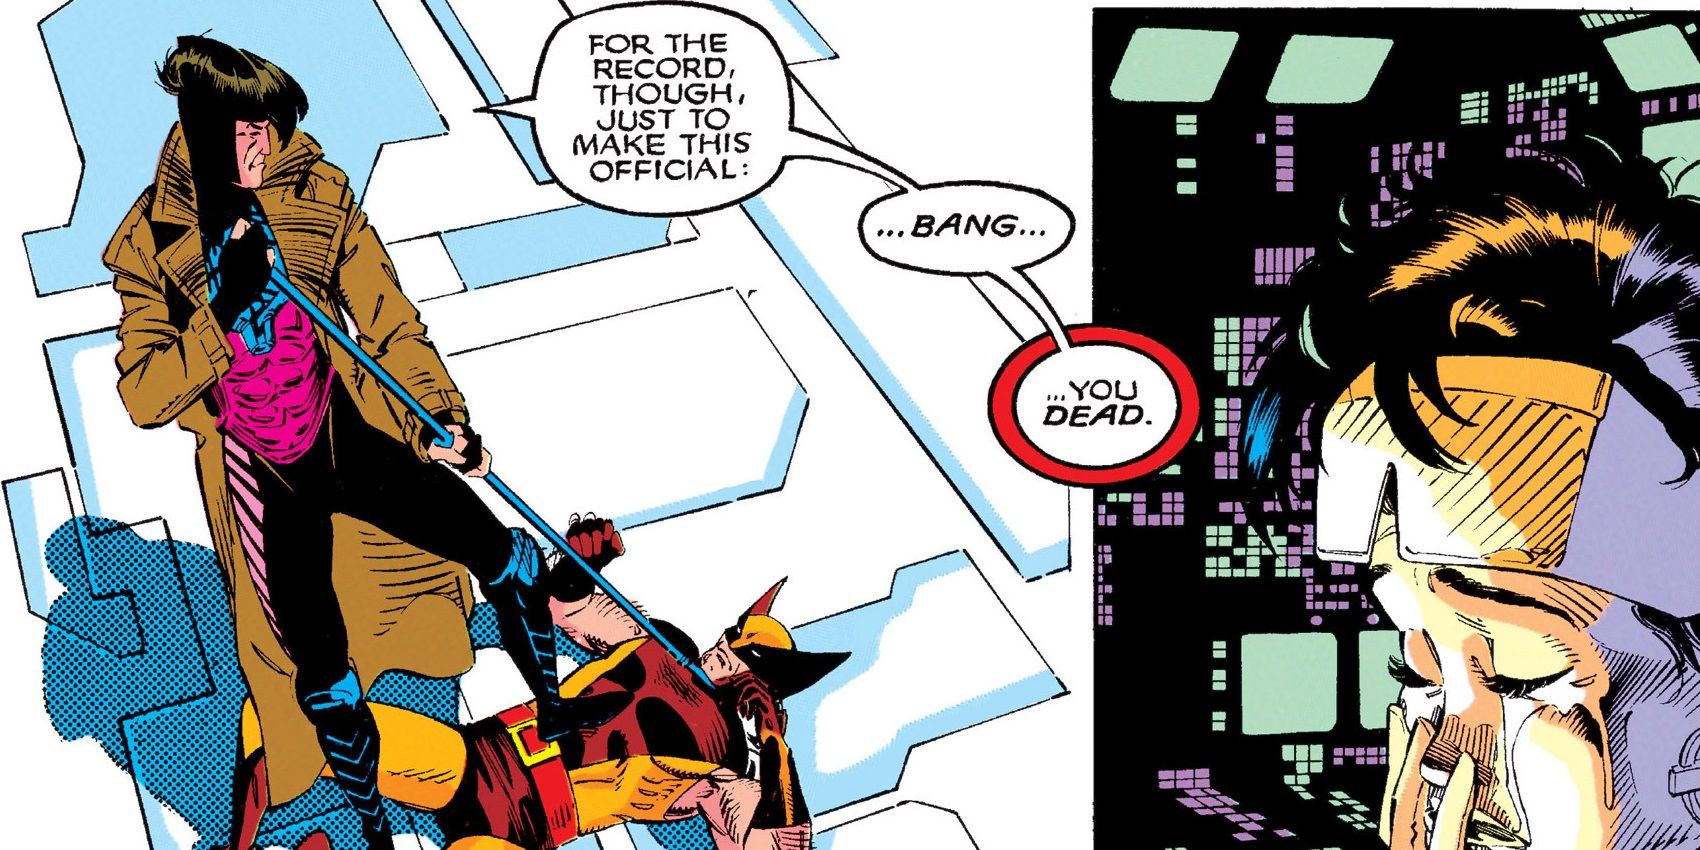 Gambit beats Wolverine in the Uncanny X-Men